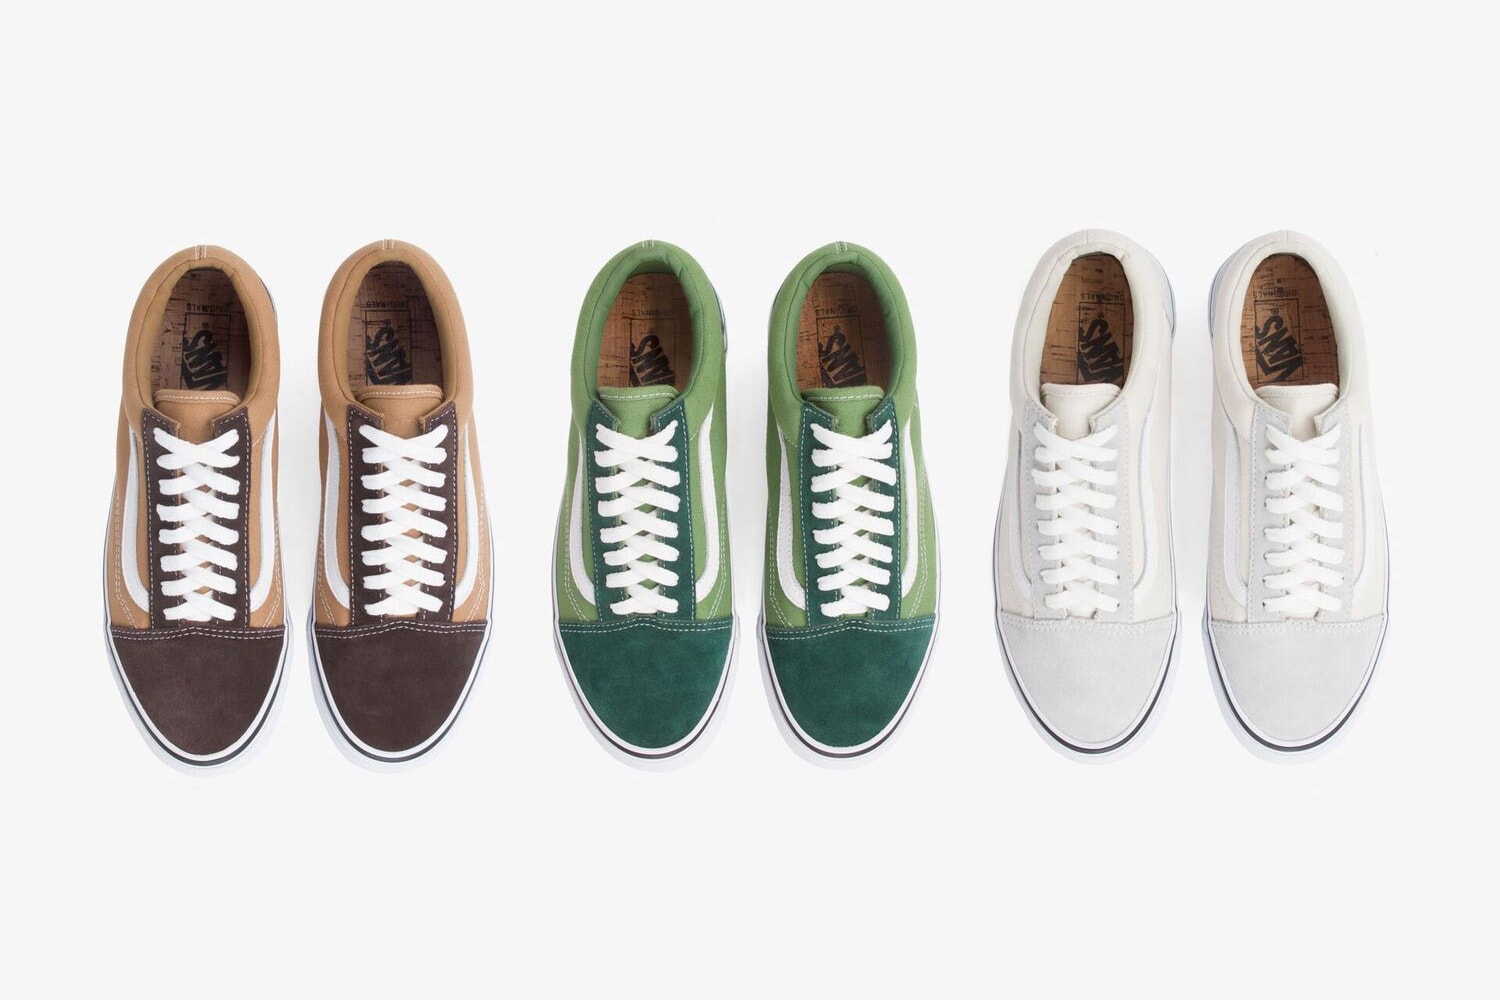 JJJJound 與 Vans 推出全新聯乘鞋款系列